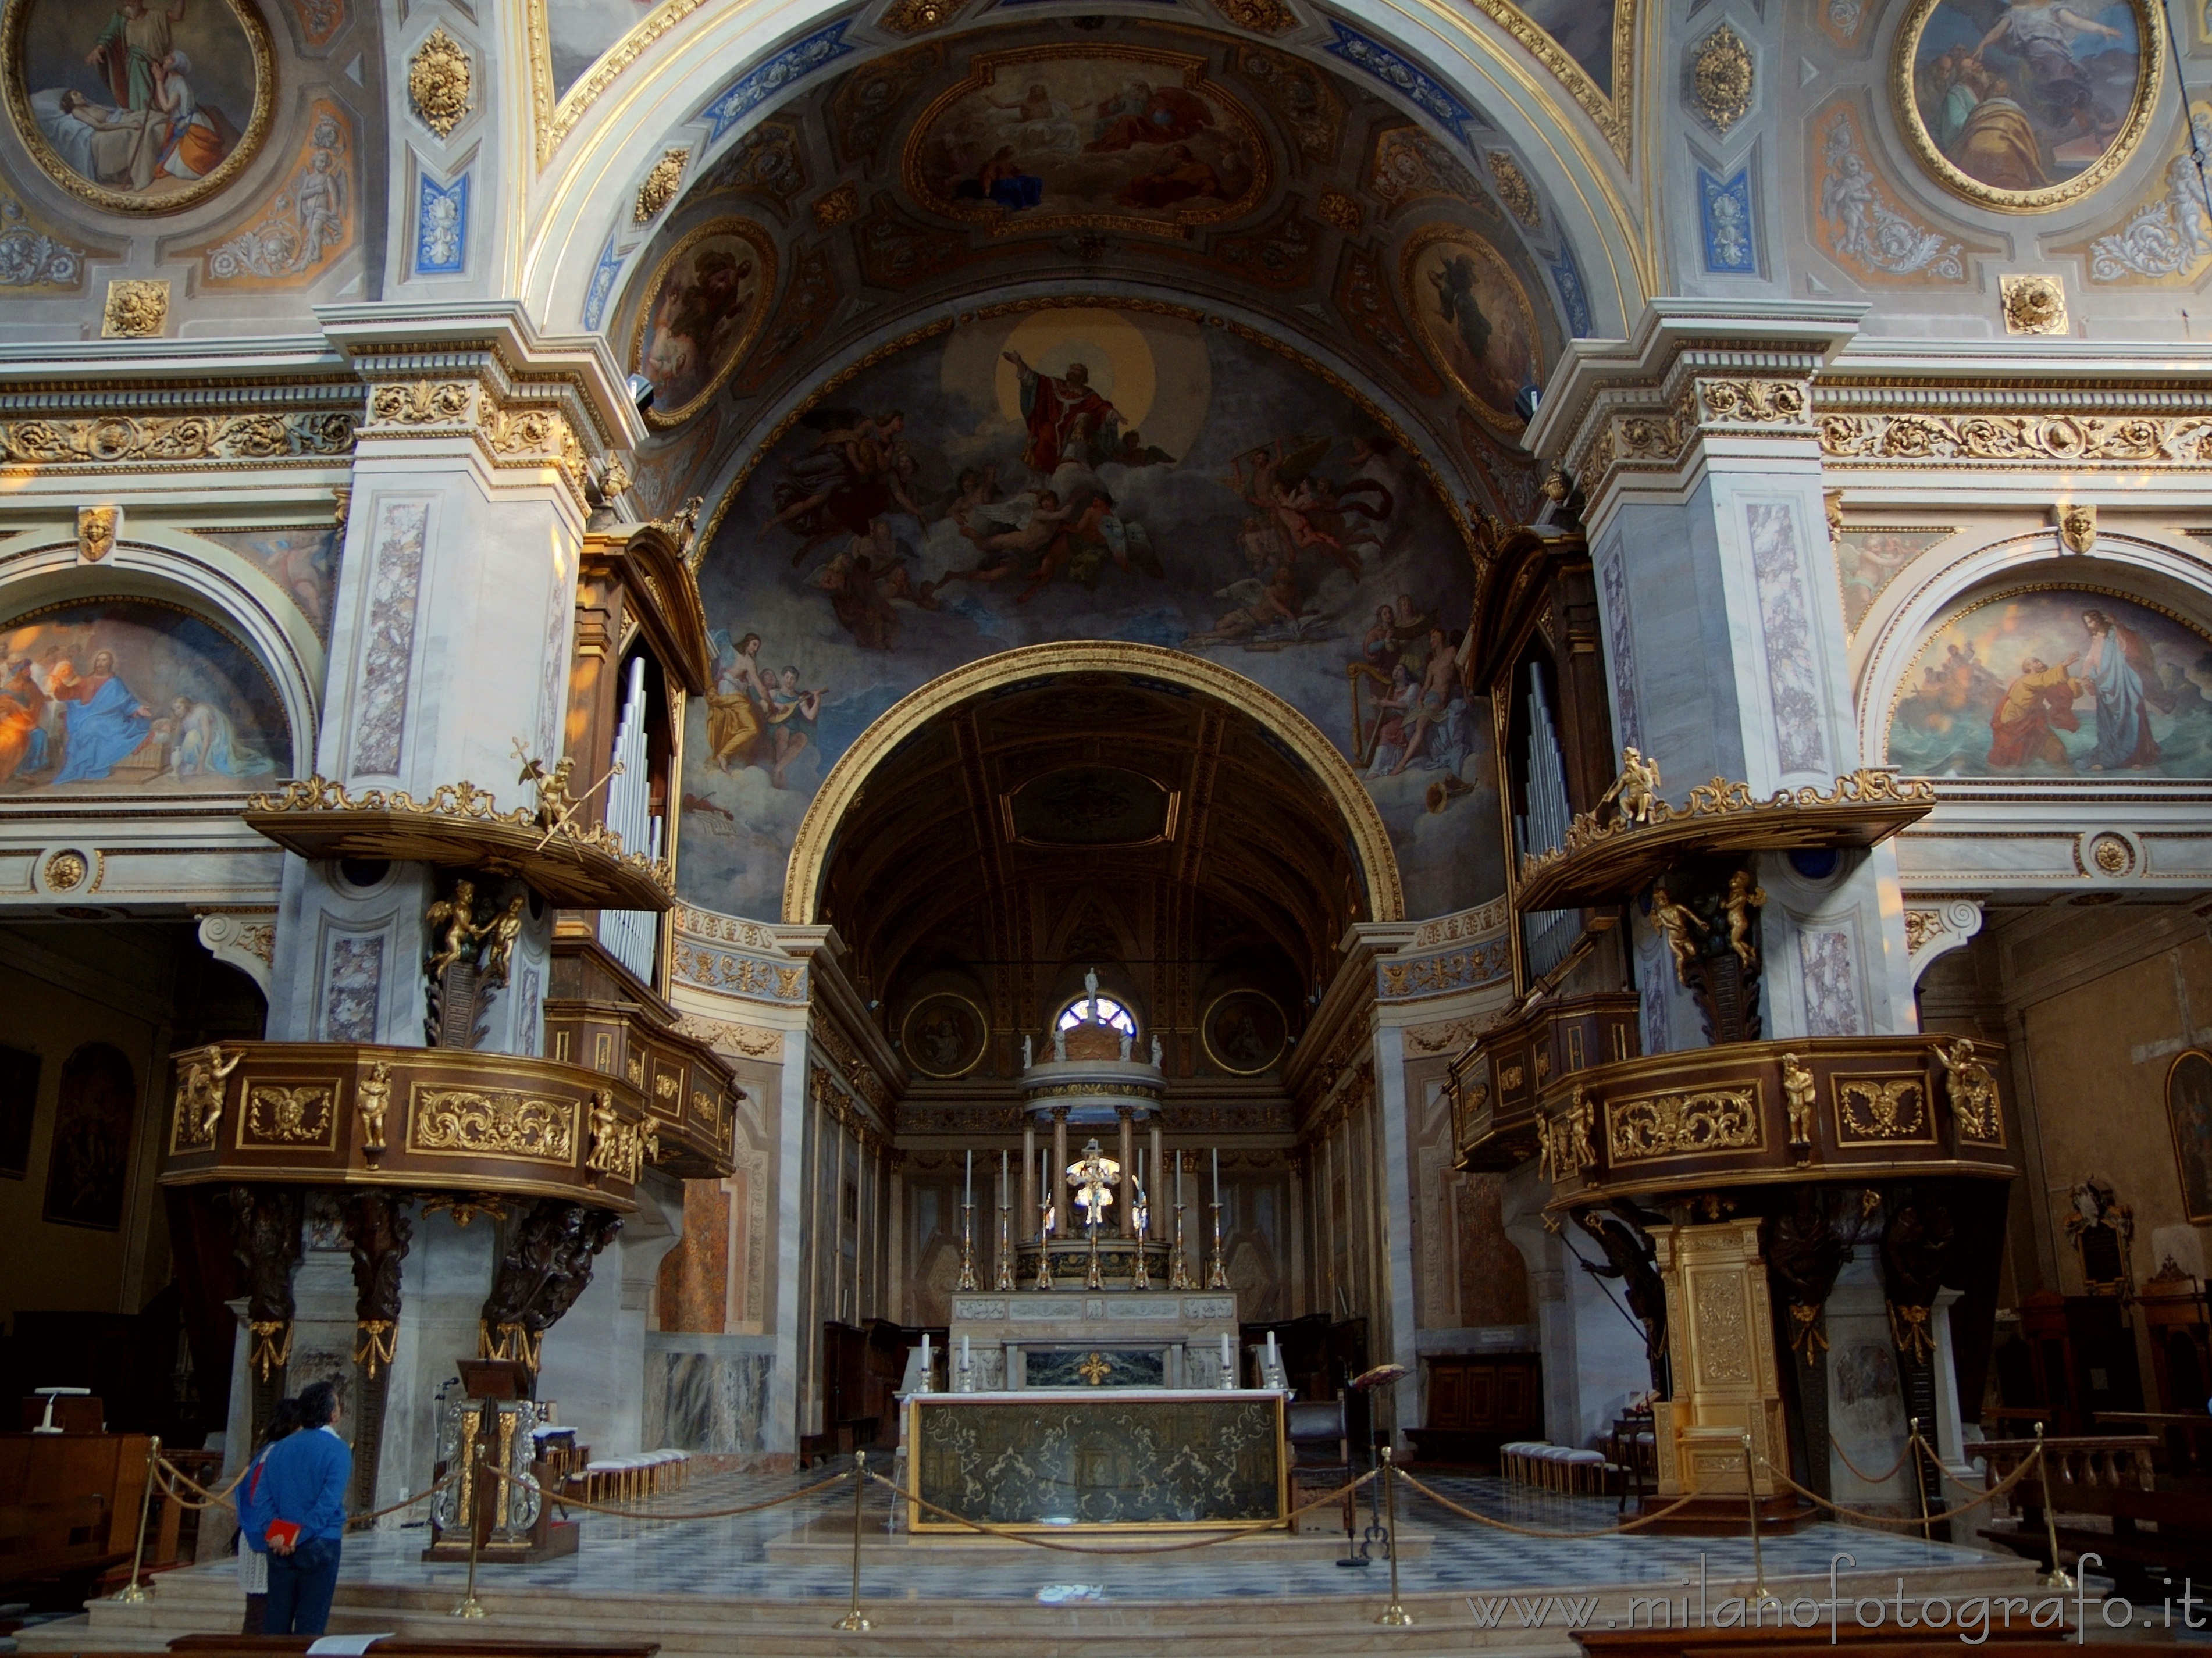 Vigevano (Pavia, Italy): Interiors of the Duomo - Vigevano (Pavia, Italy)